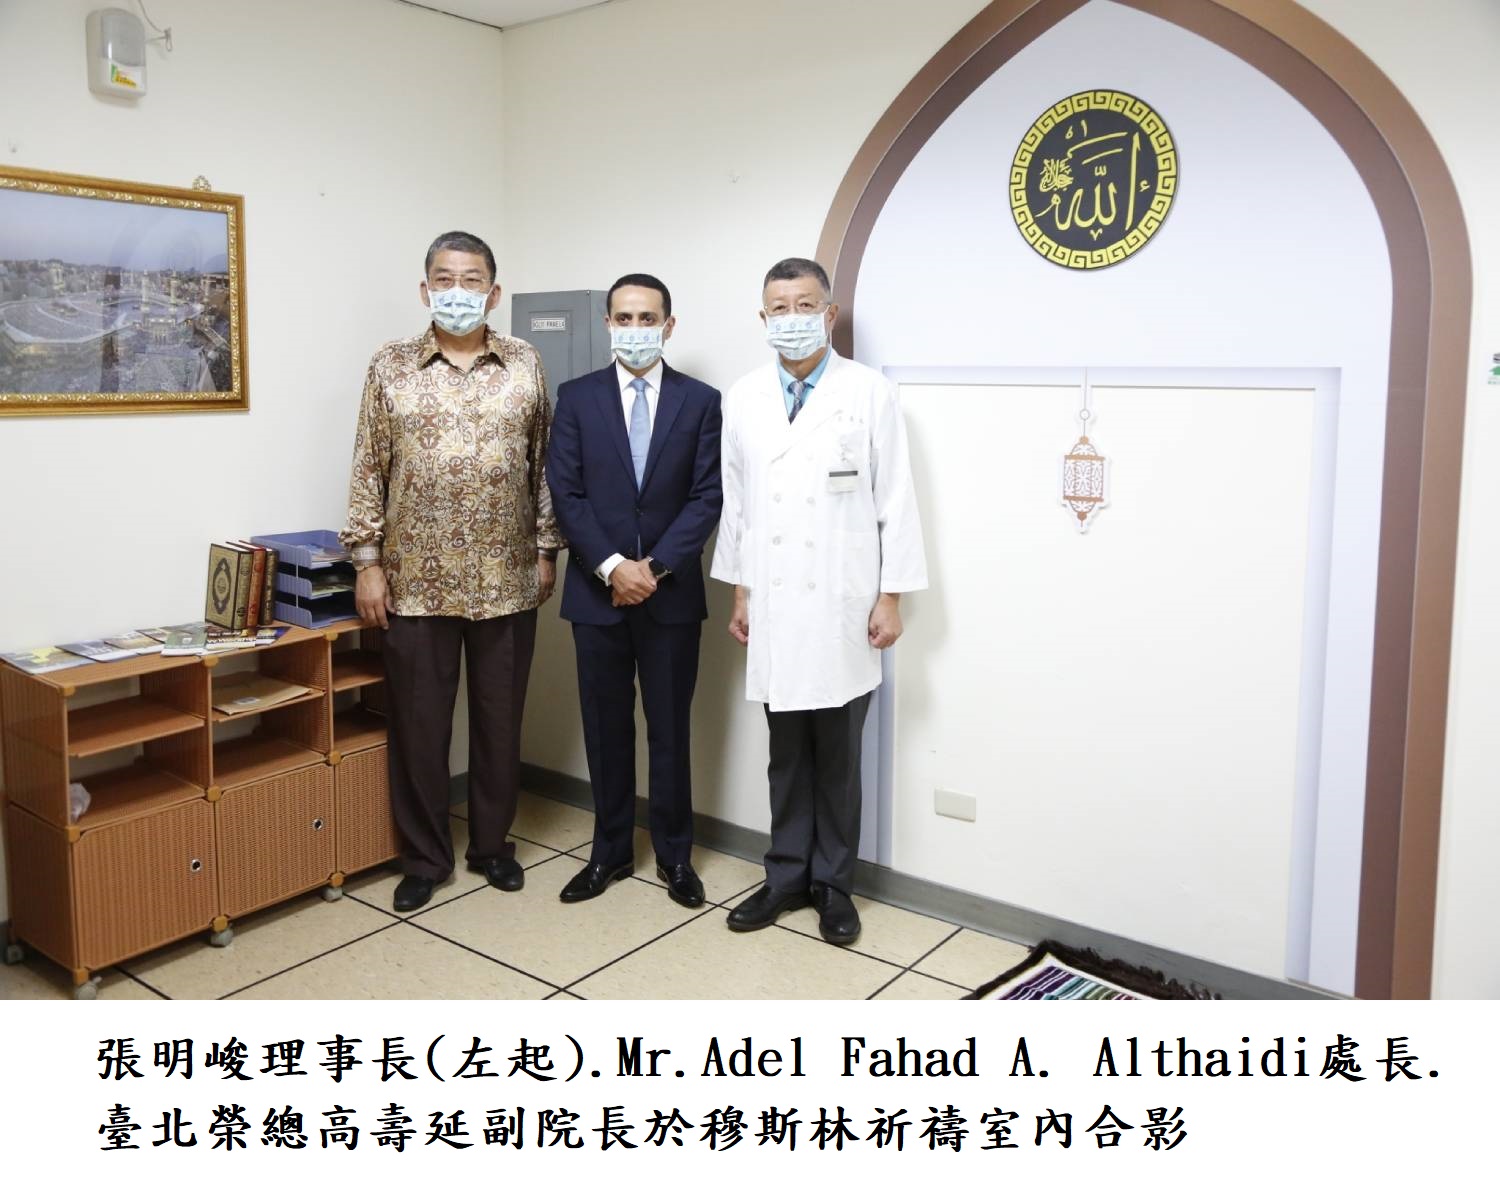 張明峻理事長(左起).Mr.Adel Fahad A. Althaidi處長.臺北榮總高壽延副院長於穆斯林祈禱室內合影